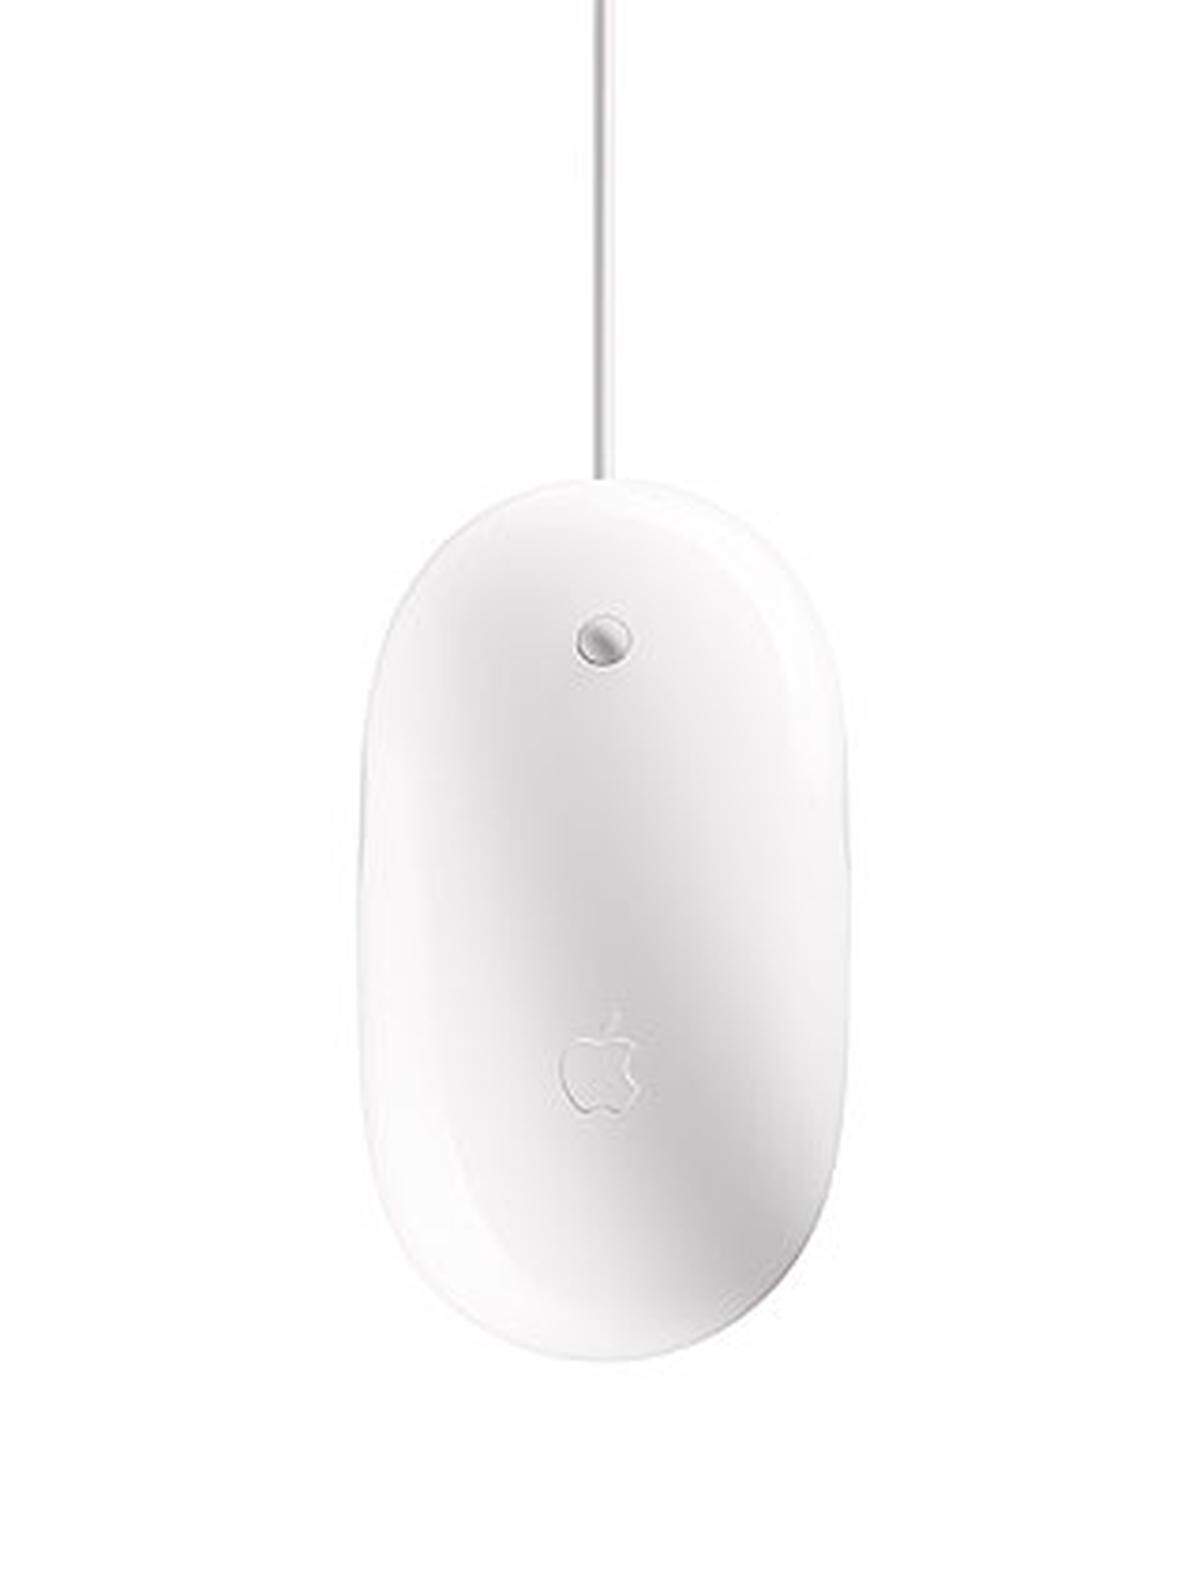 Apple reagierte dennoch schnell und ersetzte den "Puck" durch die Mighty Mouse. Die vielen Apple-Jünger, die bevorzugt mit einer Ein-Tasten-Maus arbeiteten, waren mit ihr wieder glücklich.  Zwei-Tasten-Benutzer verzweifelten jedoch an der geringen Präzision des Geräts. Die Maus, die äußerlich betrachtet nur über eine Taste verfügt, konnte durch spezieller Sensoren zwischen Links- und Rechtsklicks unterscheiden. Besonders zuverlässig arbeitete das System jedoch nicht. Inzwischen ist der Nachfolger, die "Magic Mouse" erhältlich, die auch Multitouch-Gesten erkennt. Die ehemals "mächtige" Maus heißt nur noch "Apple Mouse".